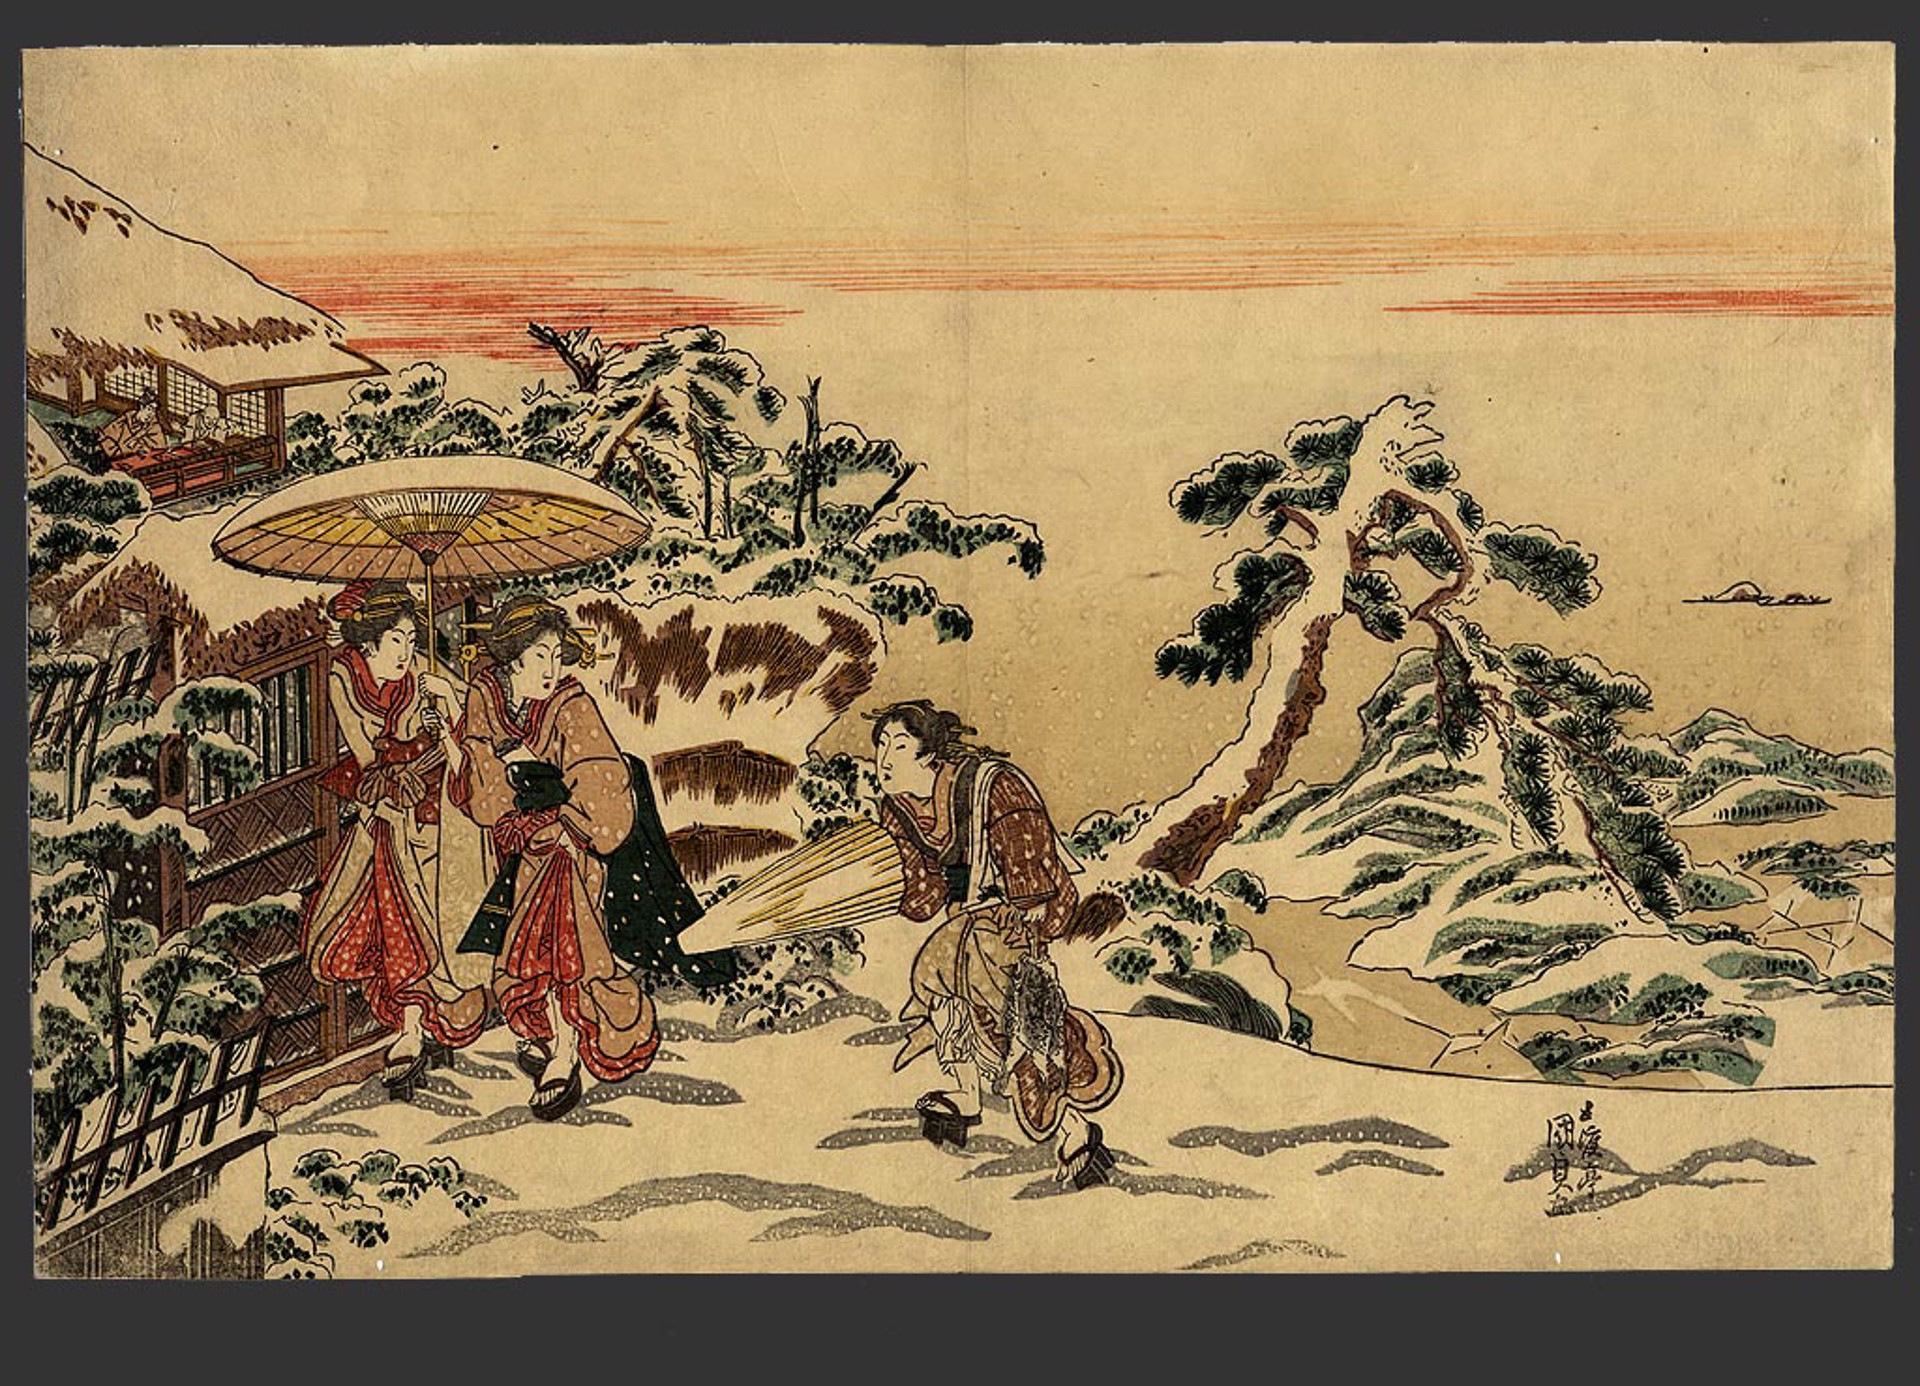 Surimono style "Bijin walking in a Snowy Landscape" by Kunisada